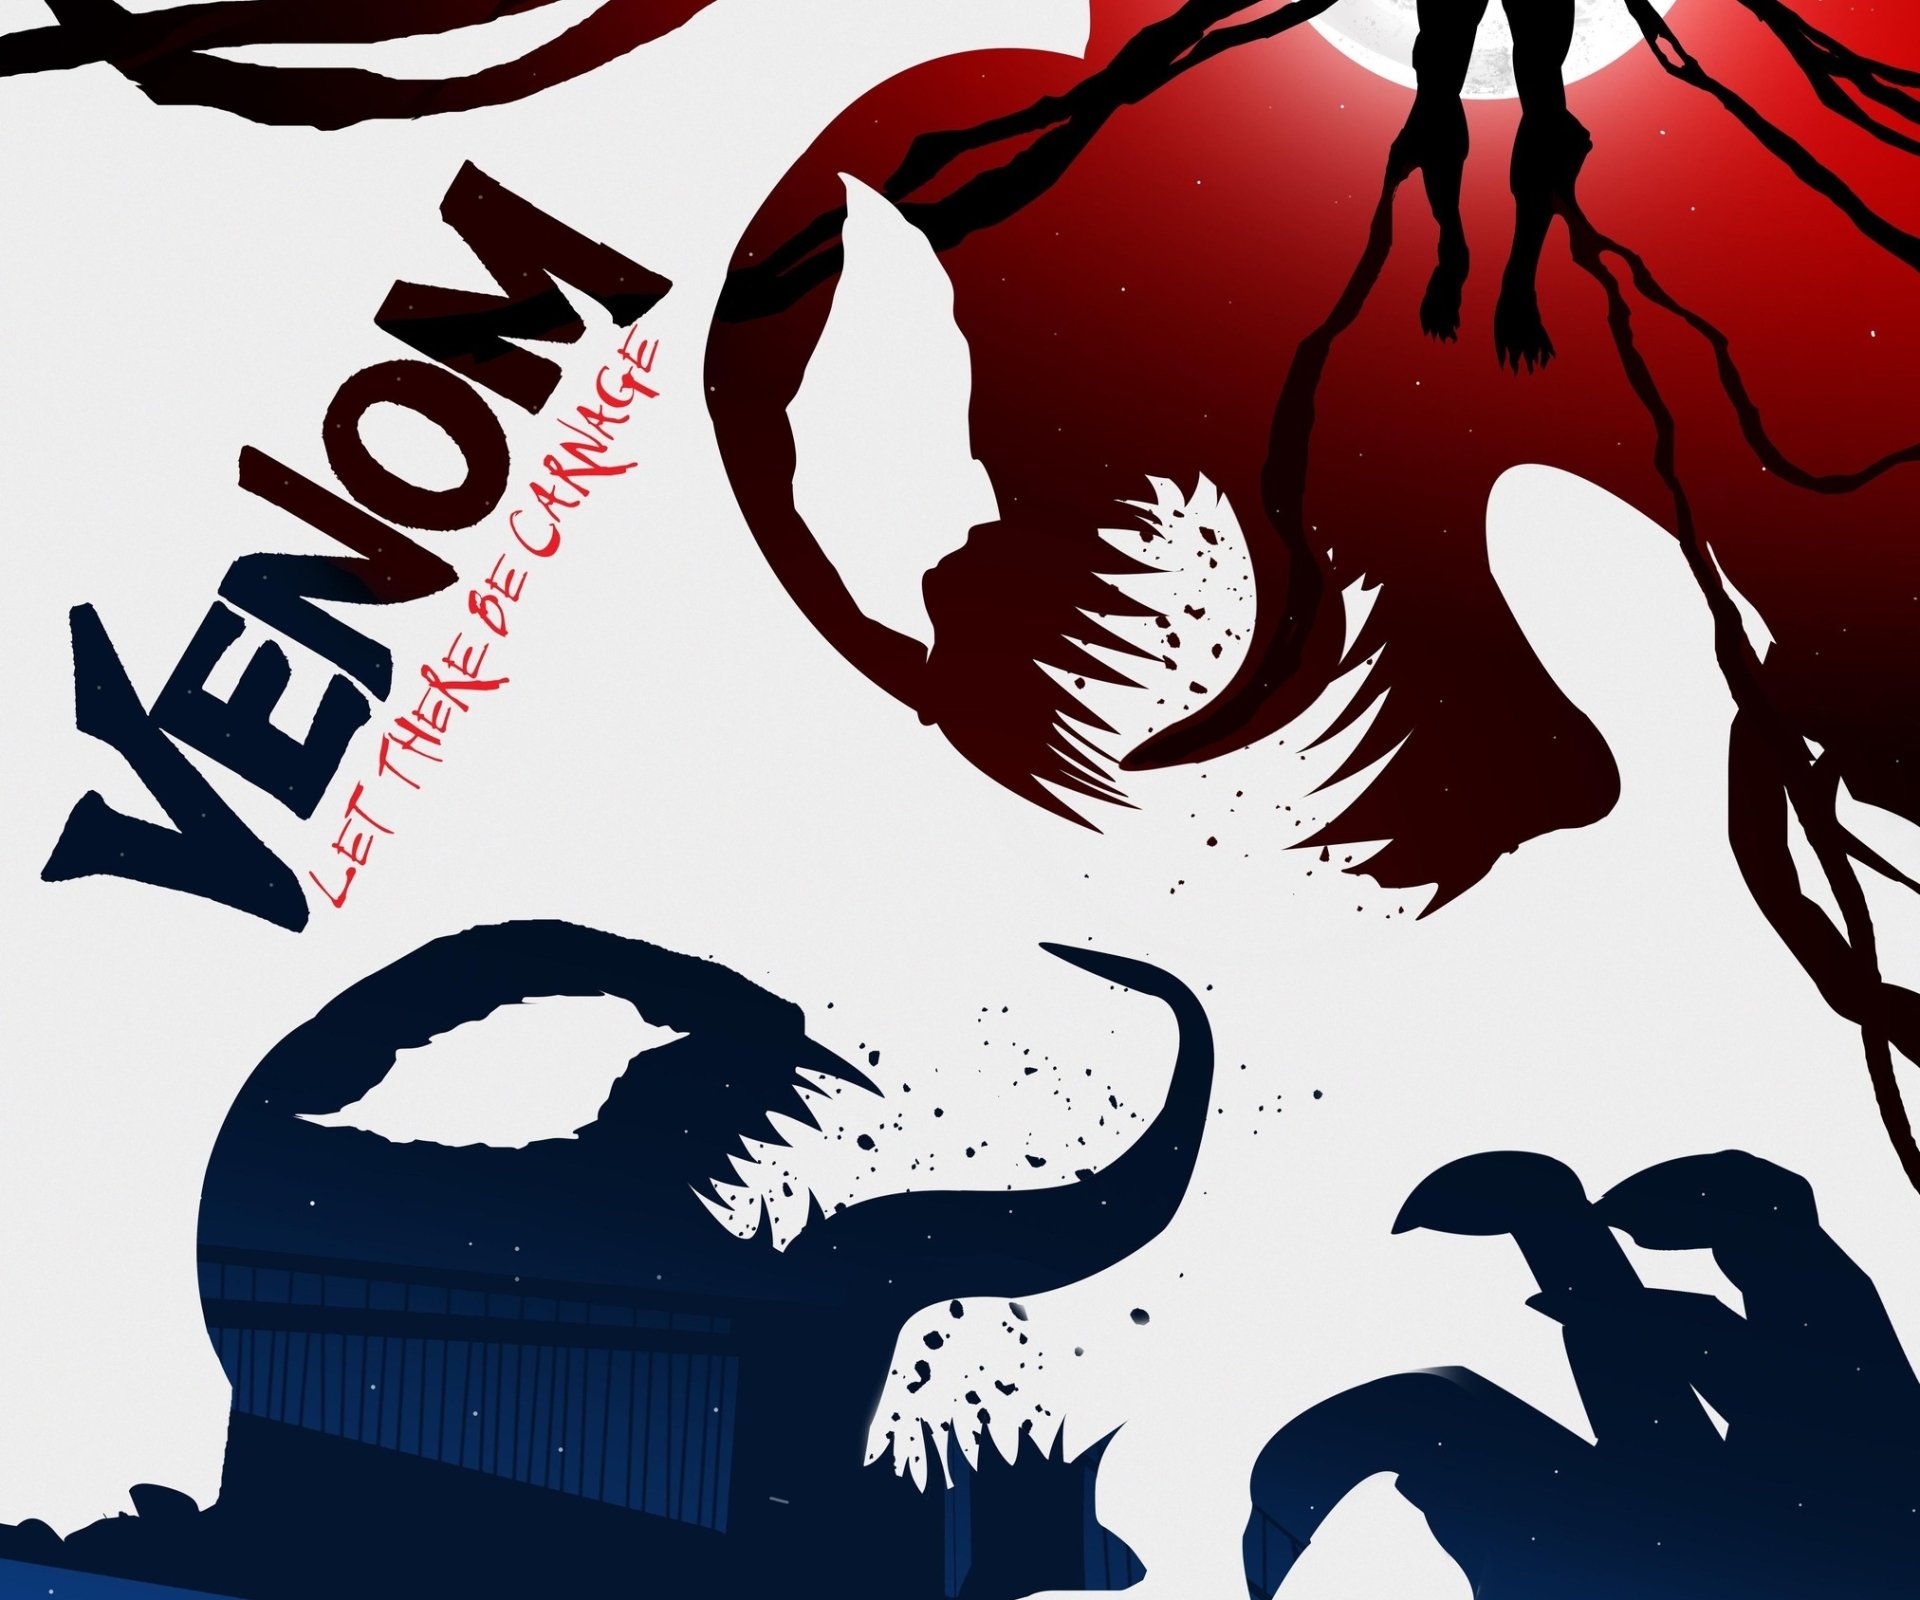 Venom Let There Be Carnage trở thành phim có doanh thu ấn tượng nhất mùa dịch